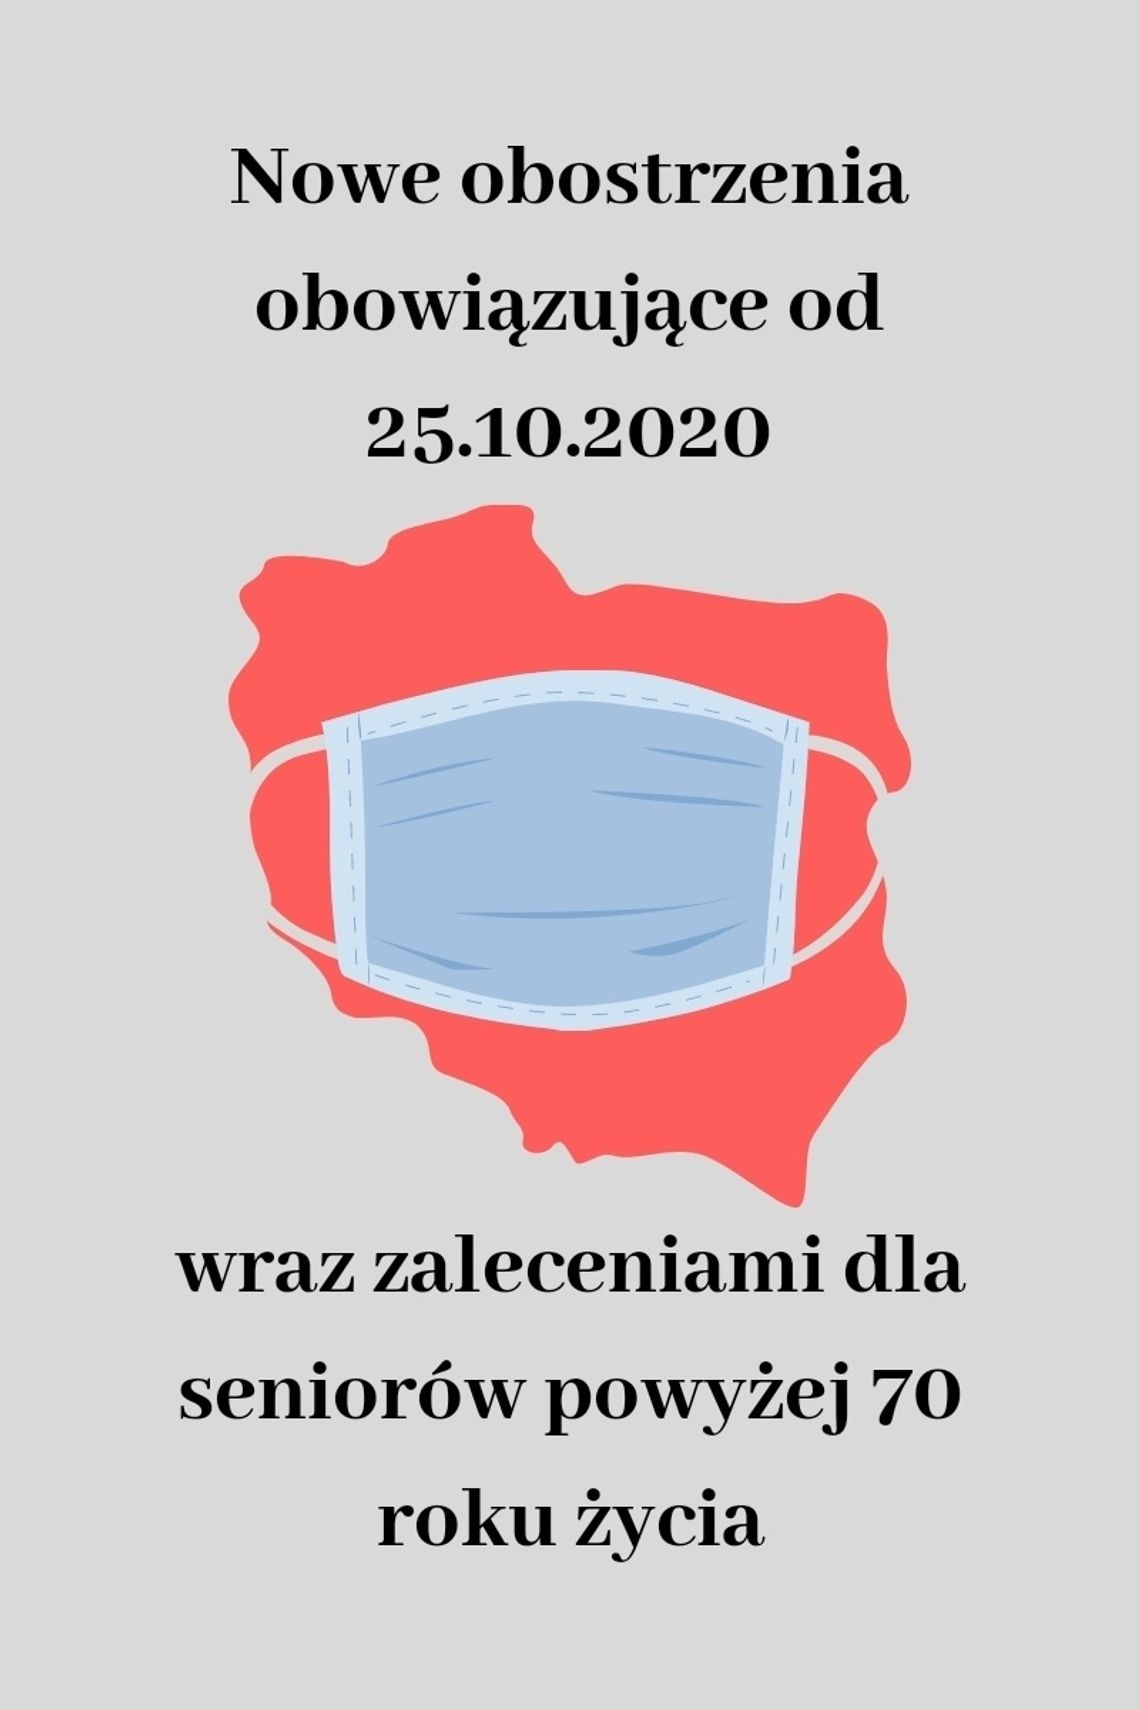 Grafika. Ma szarym tle, czerwona mapa Polski z niebieską maseczką. Na górze napis "Nowe obostrzenia obowiązujące od 25.10.2020". Poniżej napis "wraz z zaleceniami dla seniorów powyżej 70 roku życia".